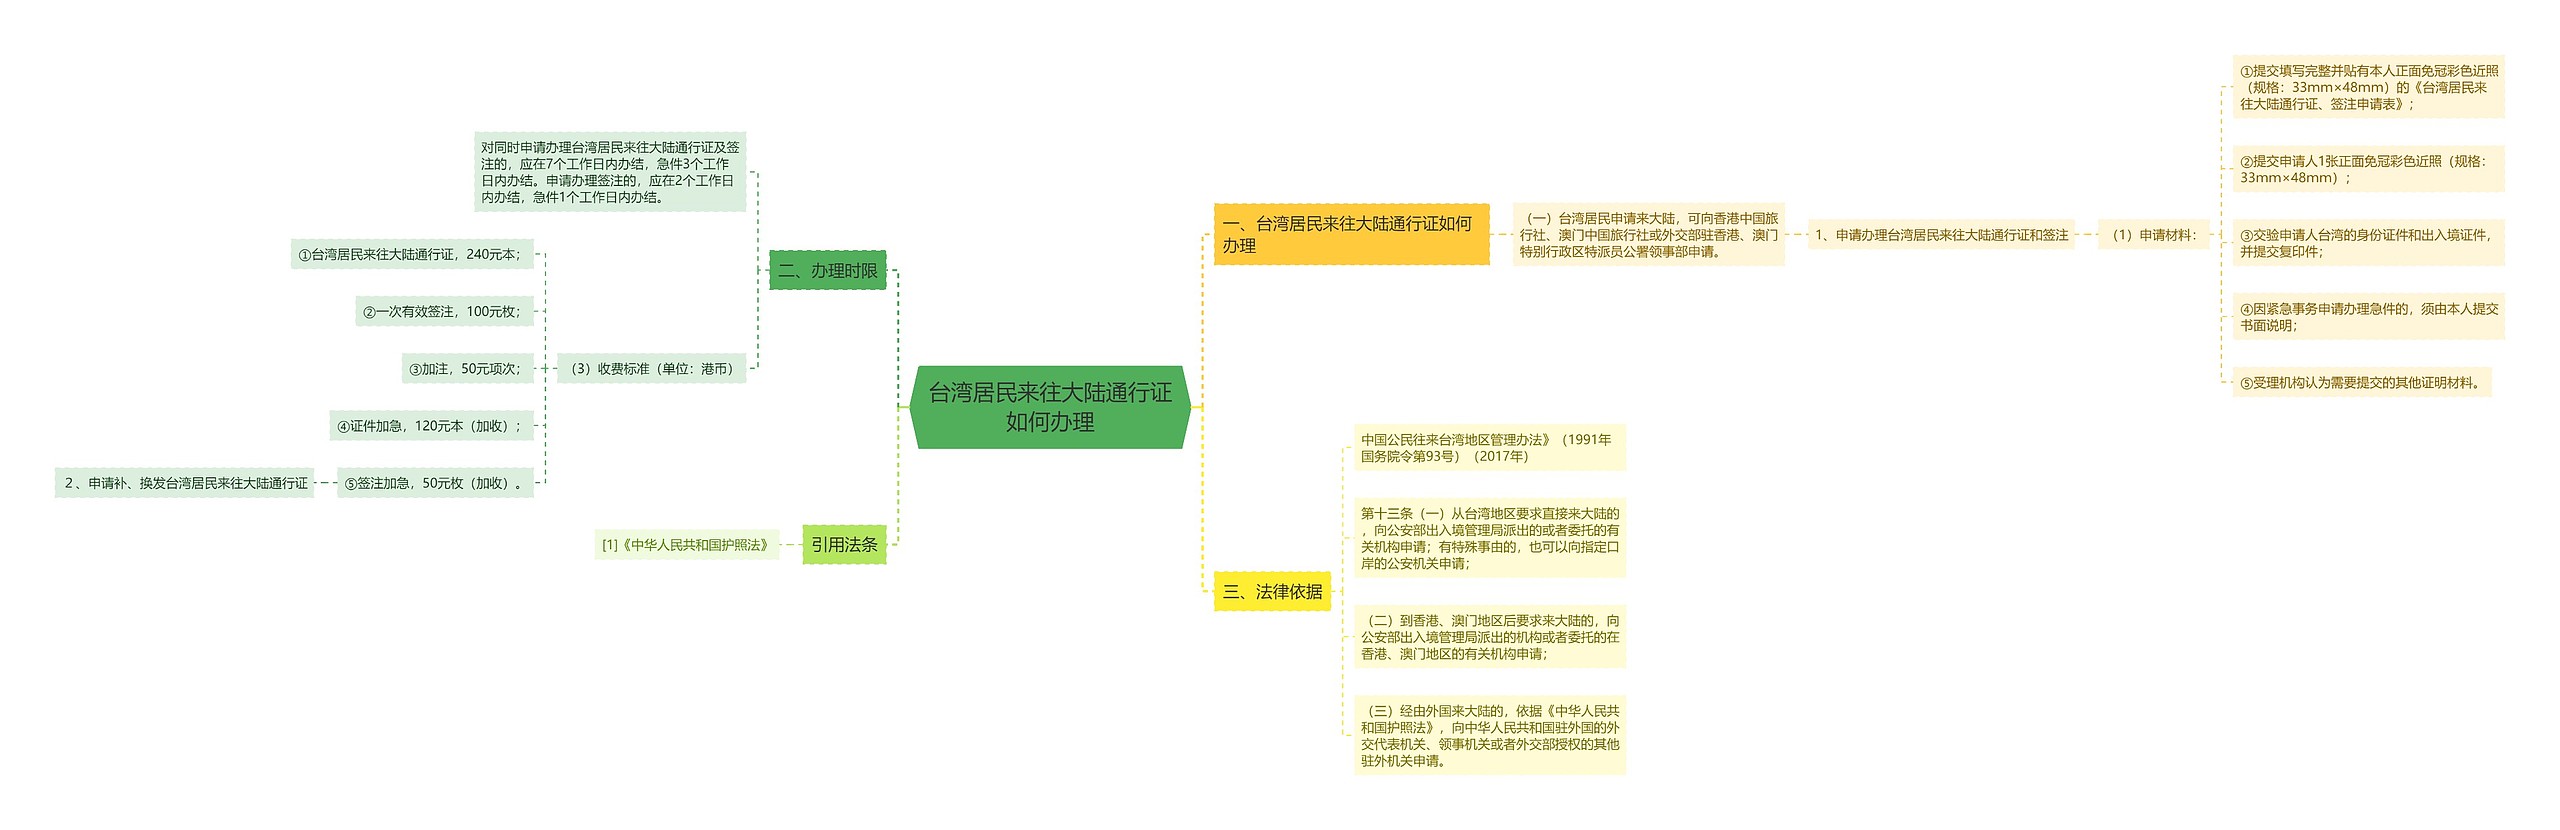 台湾居民来往大陆通行证如何办理思维导图